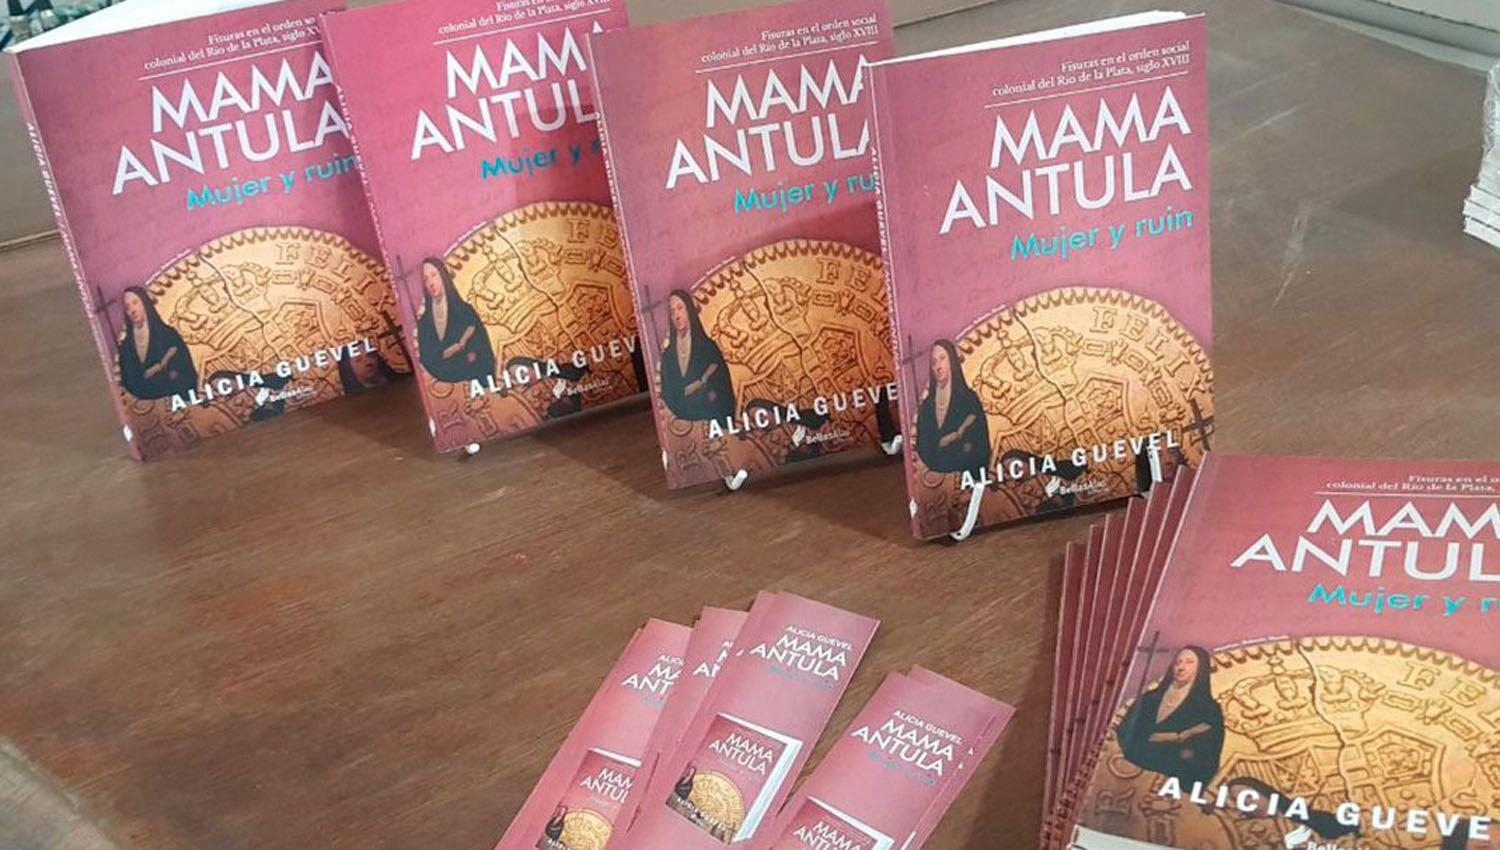 El jueves presentaraacuten el libro Mama Antula Mujer y ruin